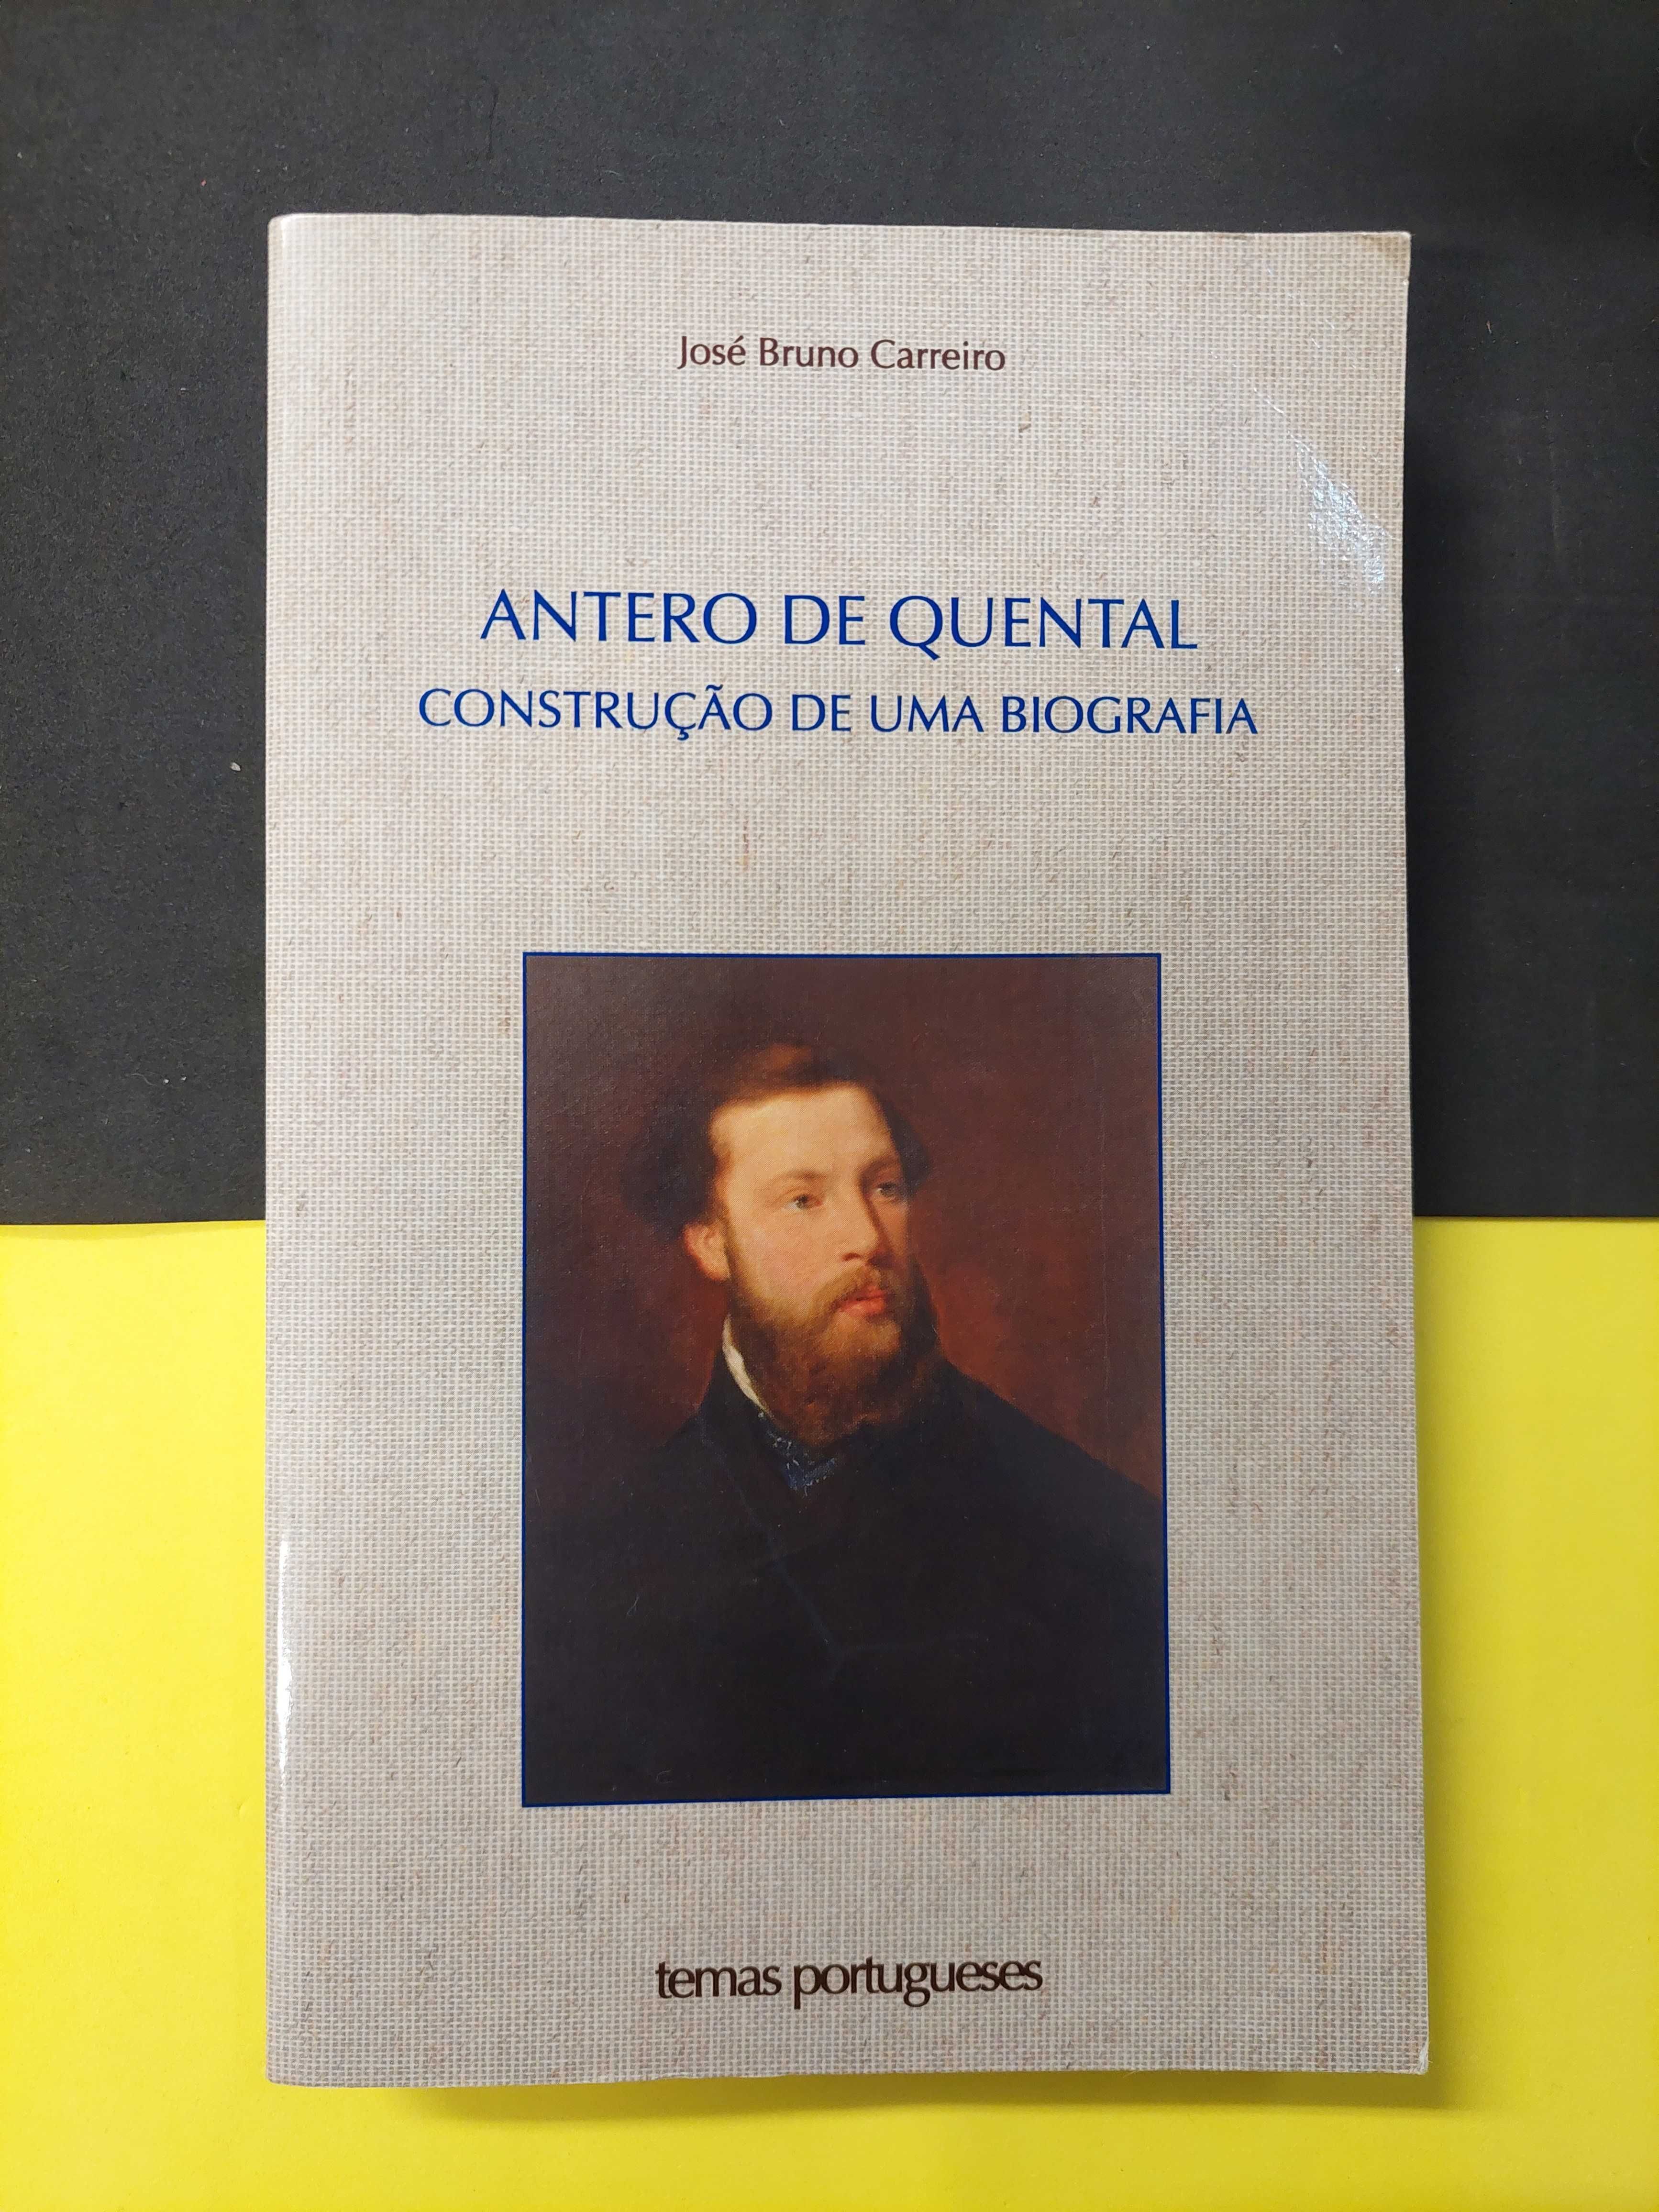 José Bruno Carreiro - Antero de Quental: Construção de uma Biografia